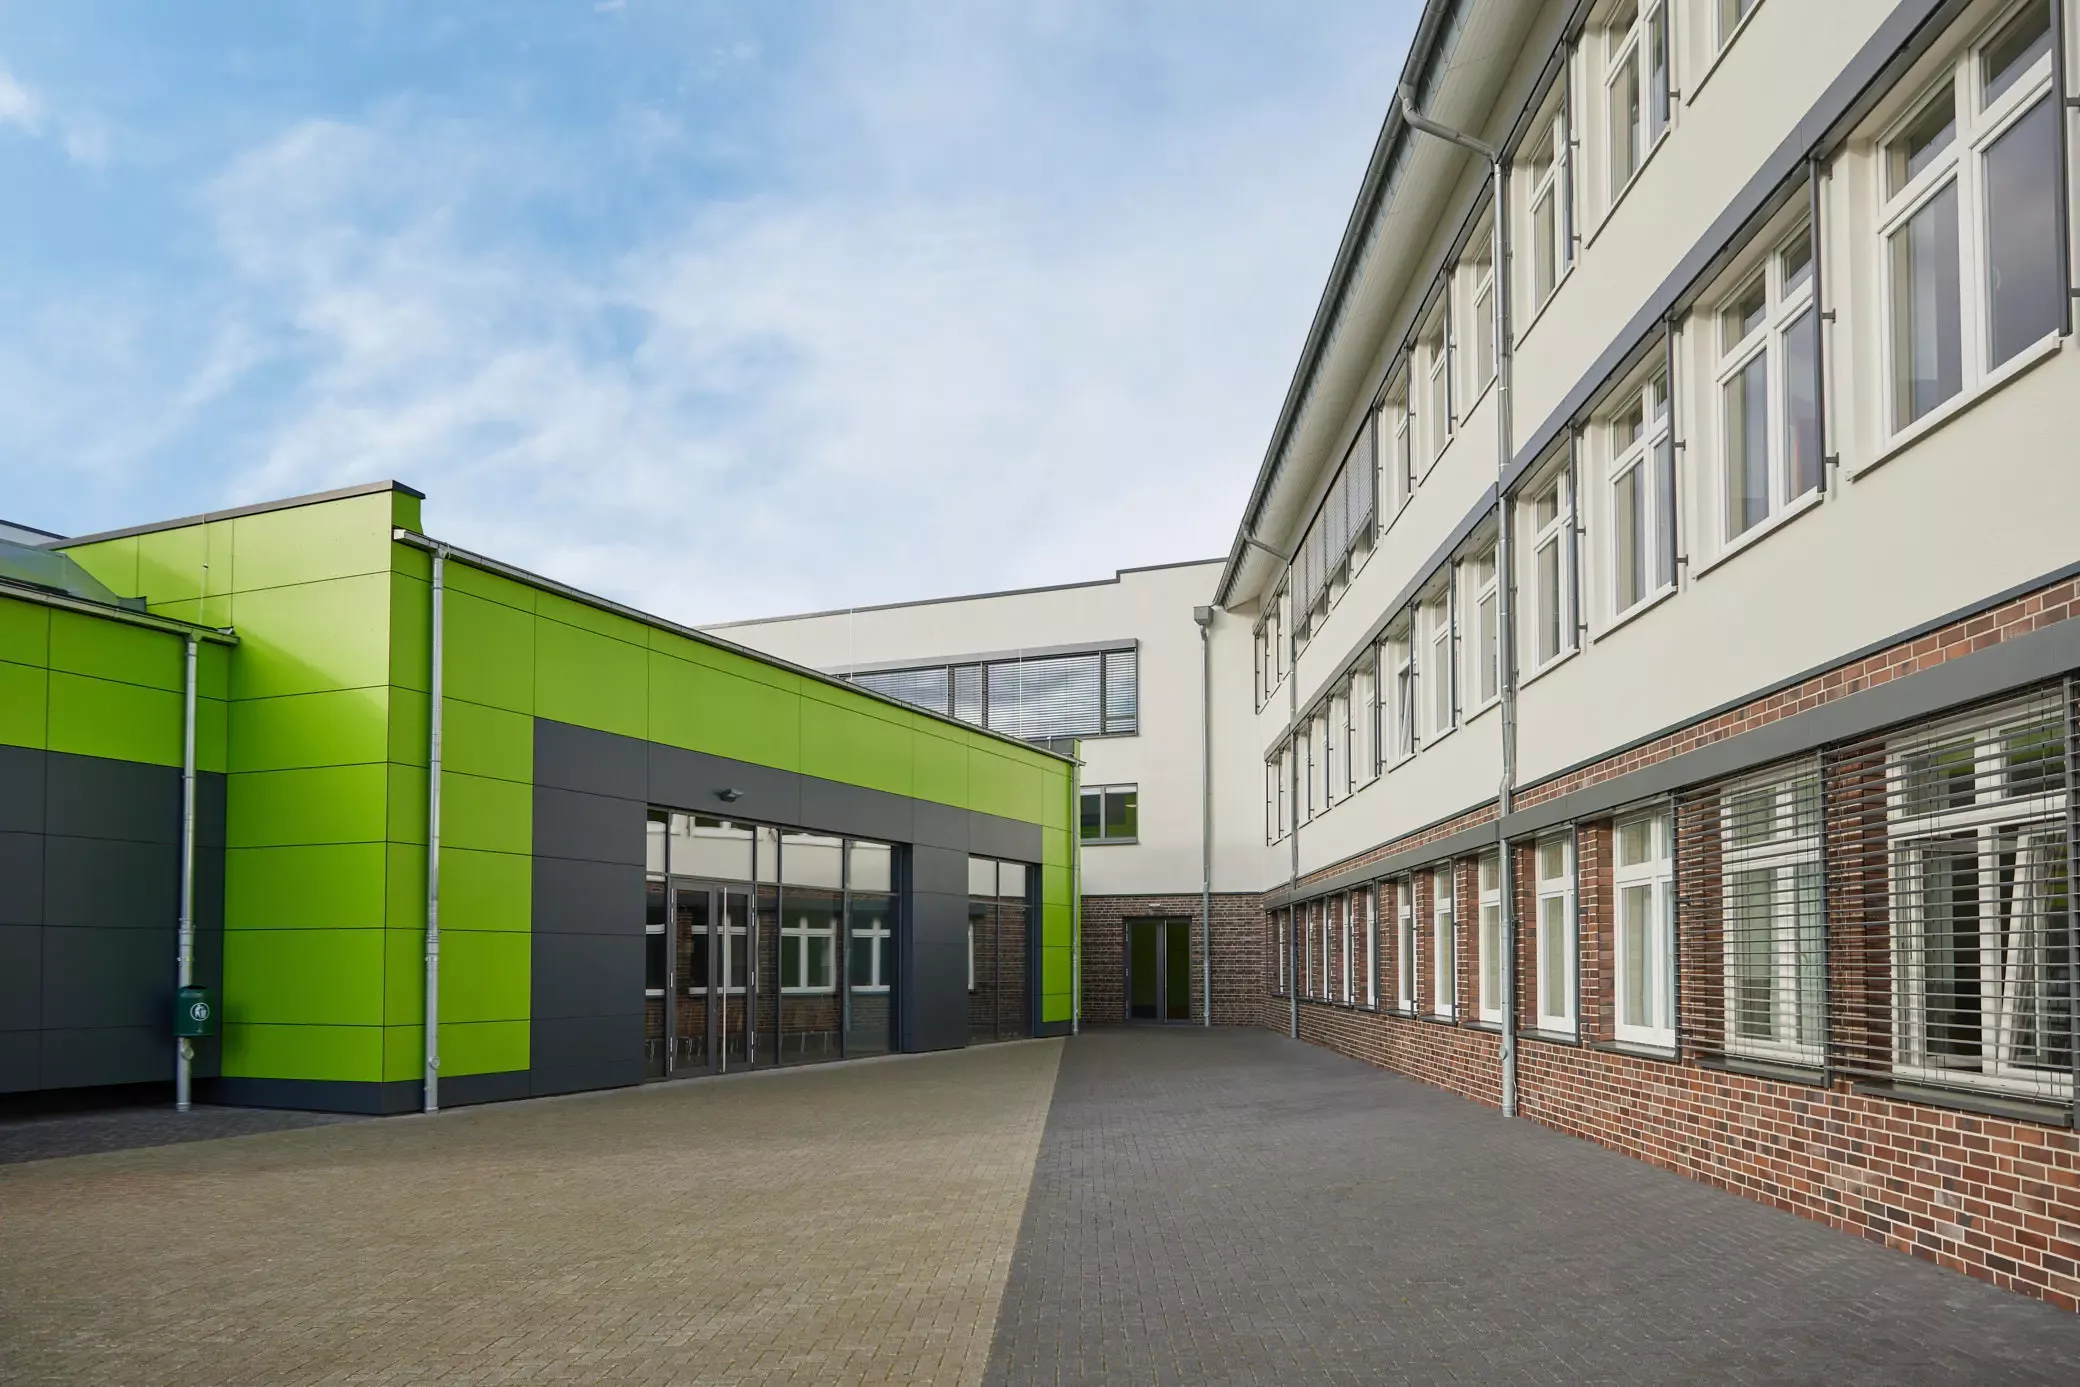 Innenhof. Schulgebäude, Klinkerfassade, grüne HPL-Platten. Ein Projekt von EPU ARCHITEKTEN.